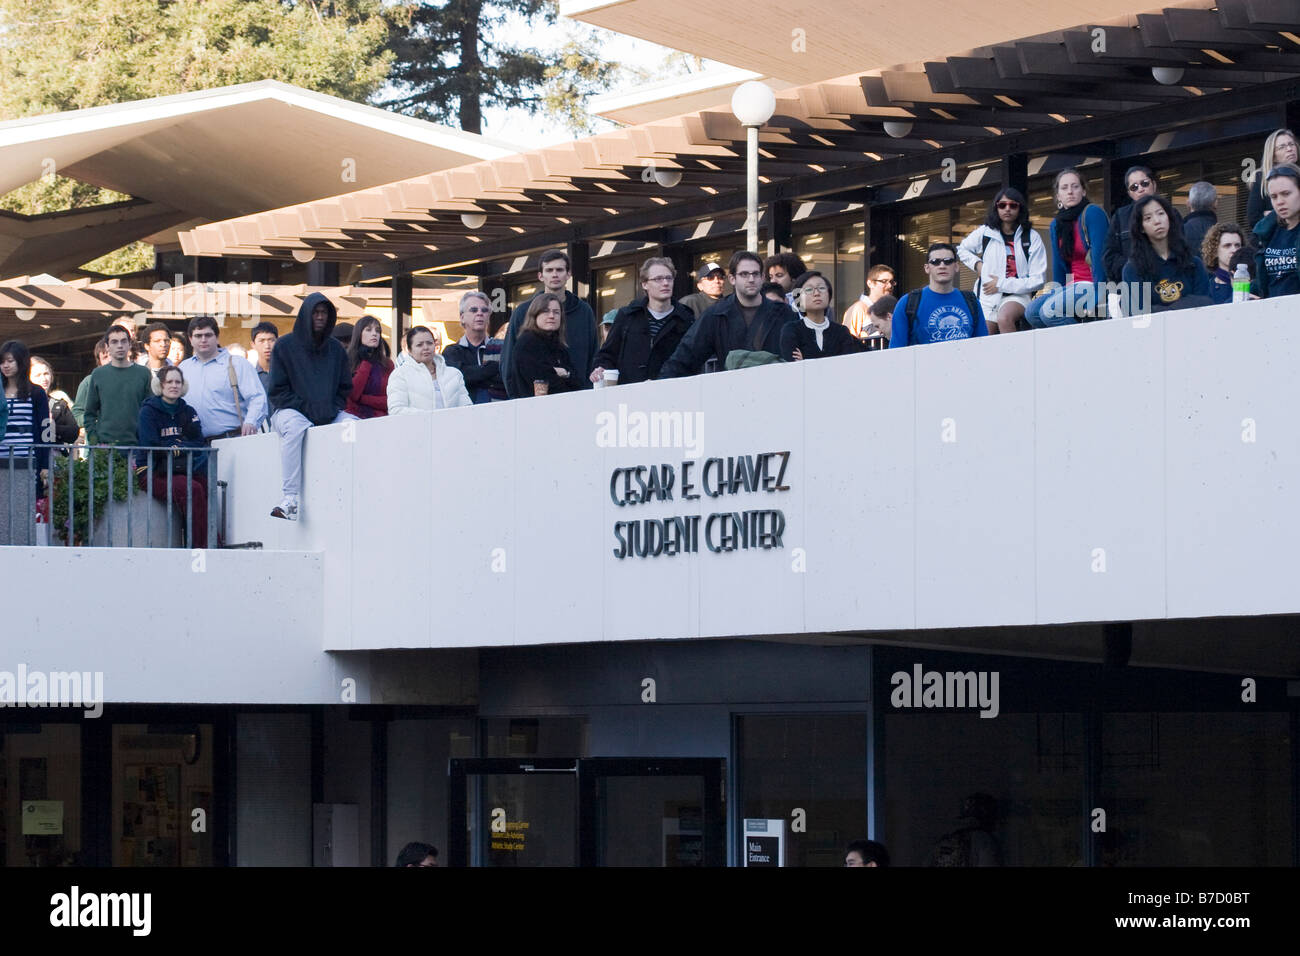 La foule d'étudiants, d'enseignants et la surveillance communautaire Inauguration Obama sur un écran géant Jumbotron, Université de Californie à Berkeley. Banque D'Images